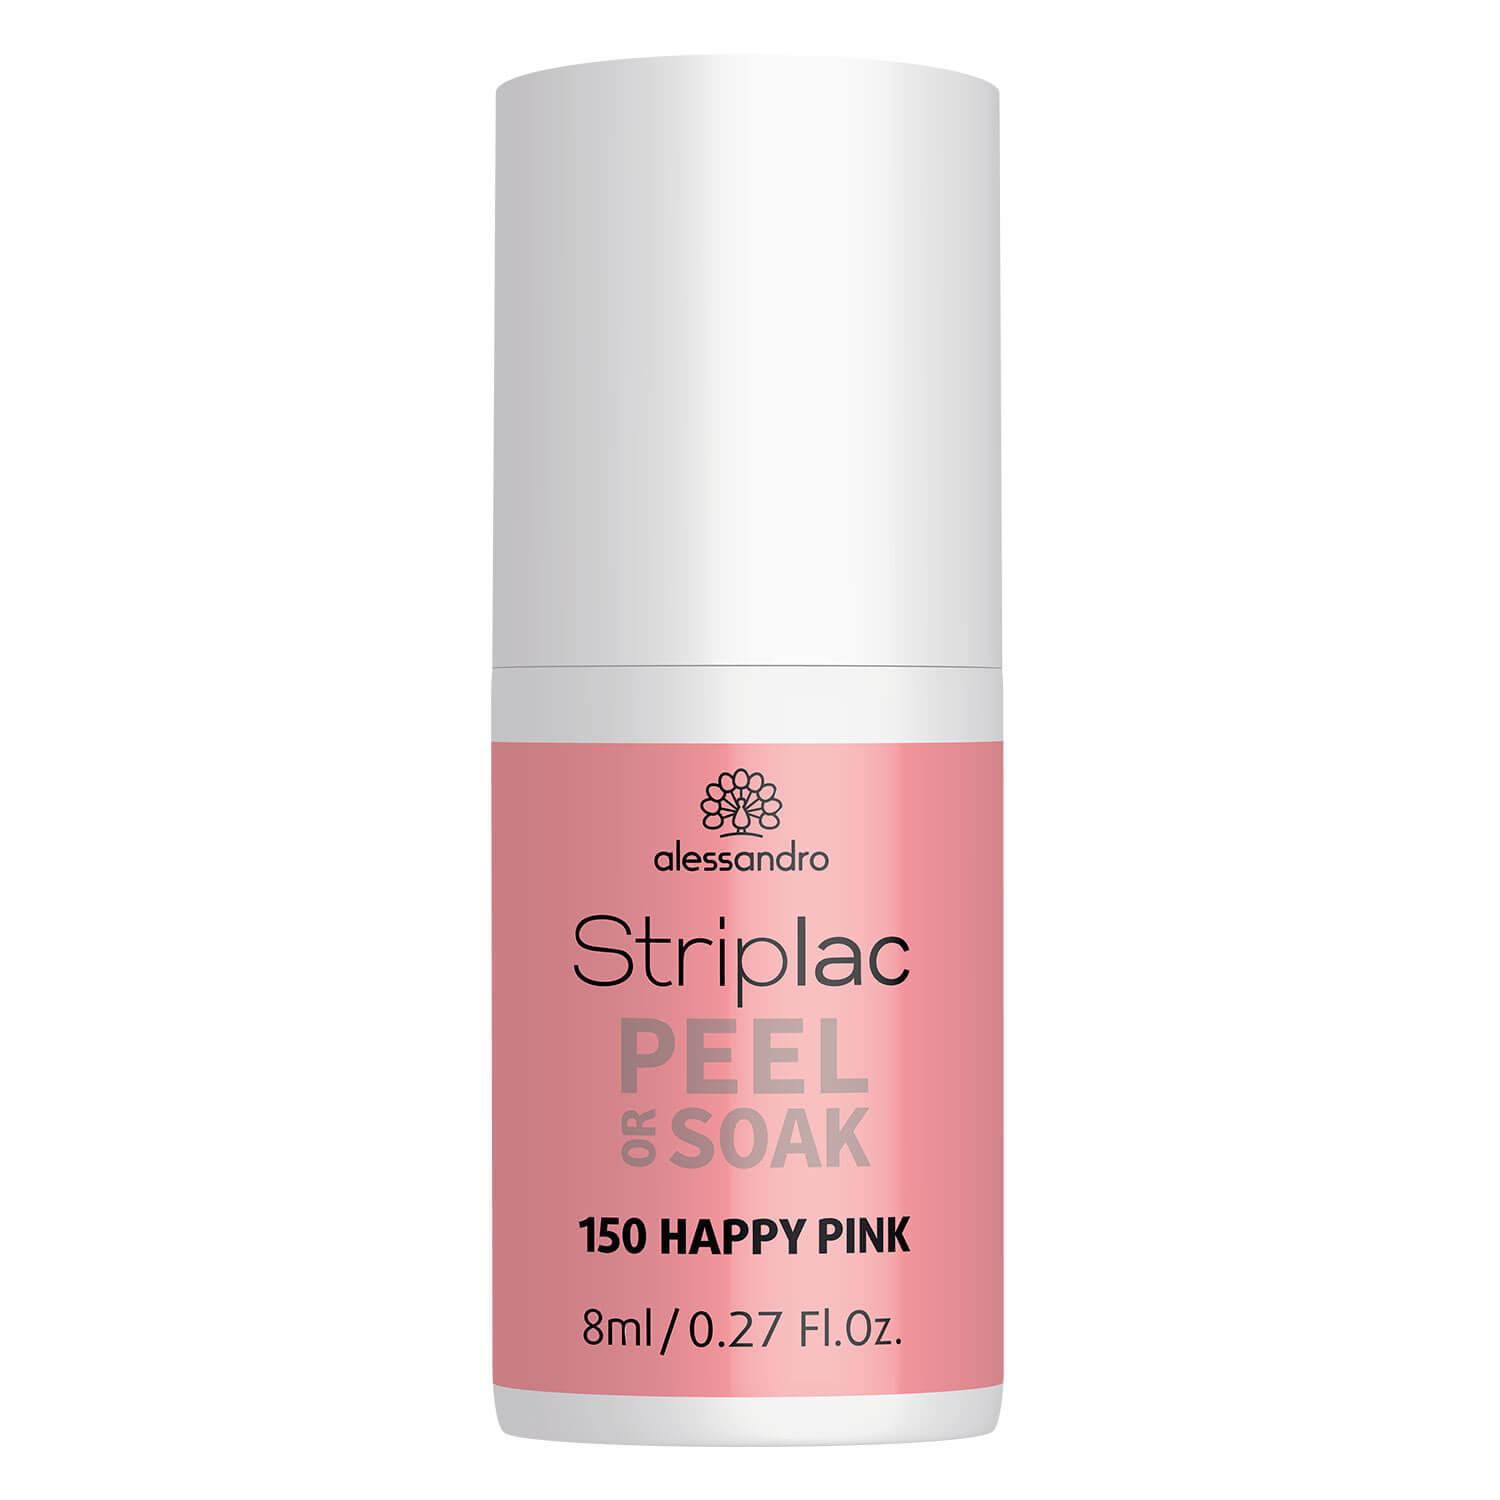 Striplac Peel or Soak - 150 Happy Pink